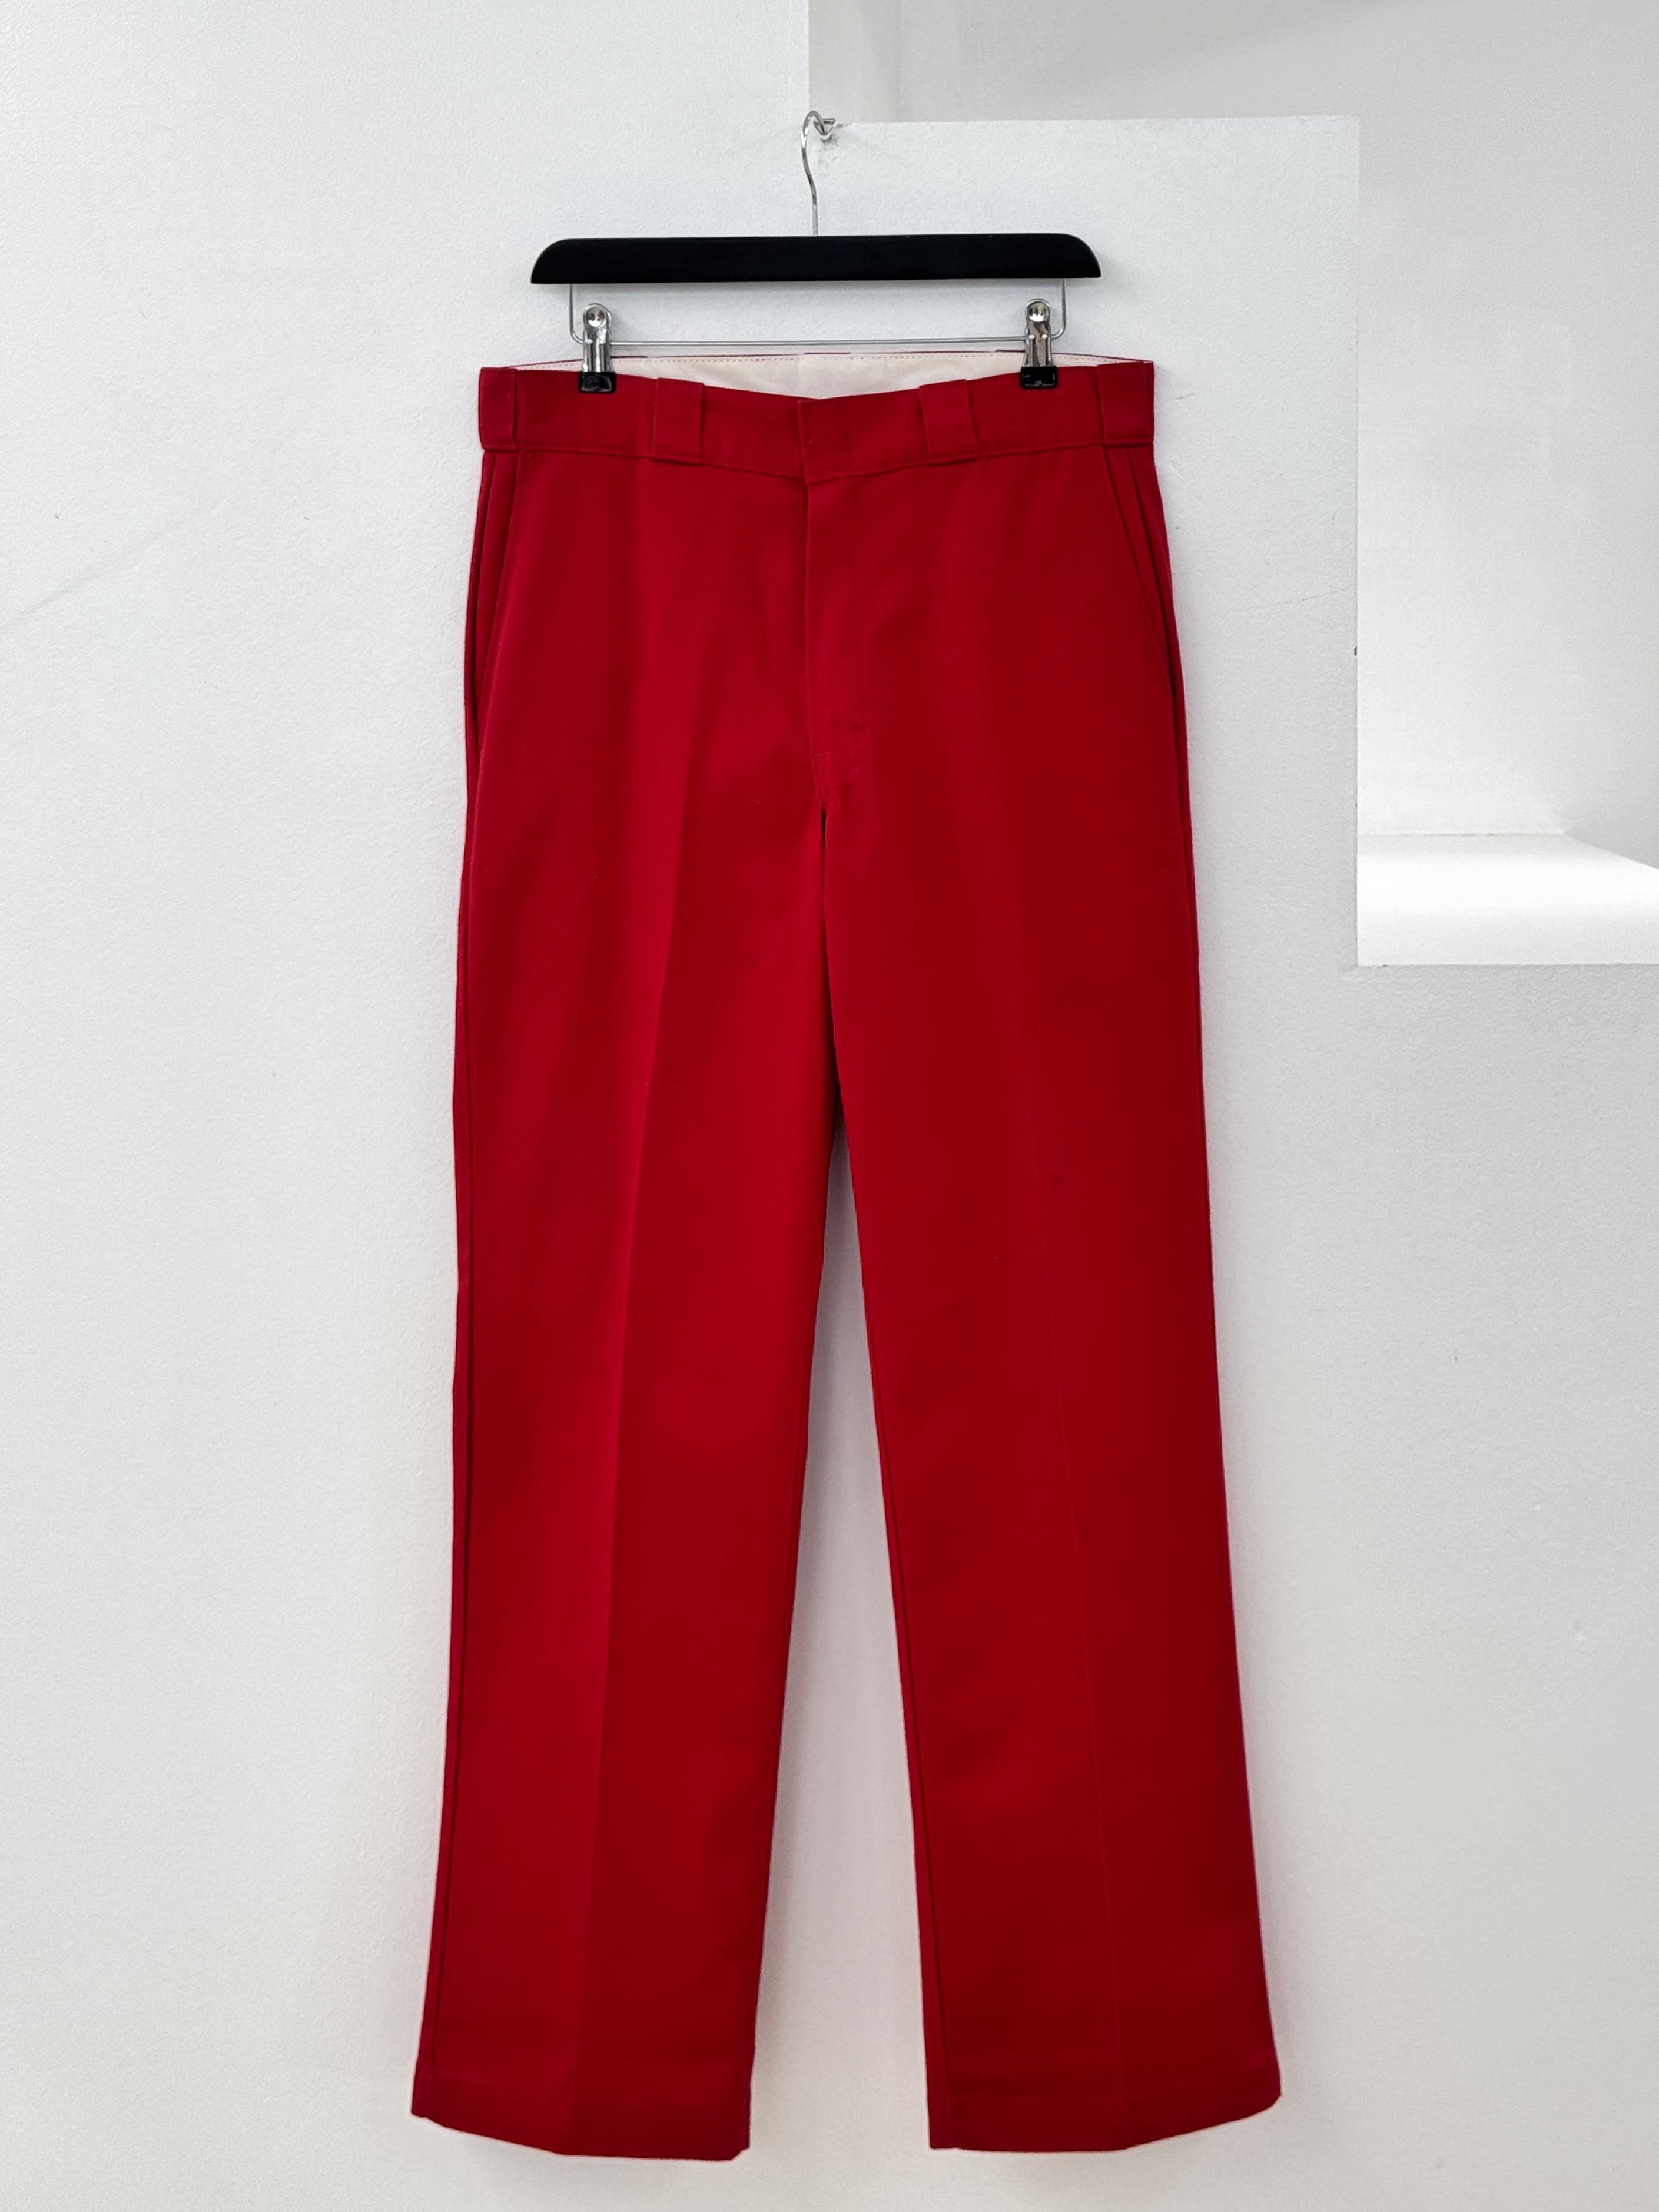 Dickies 874 red work pants 33inch